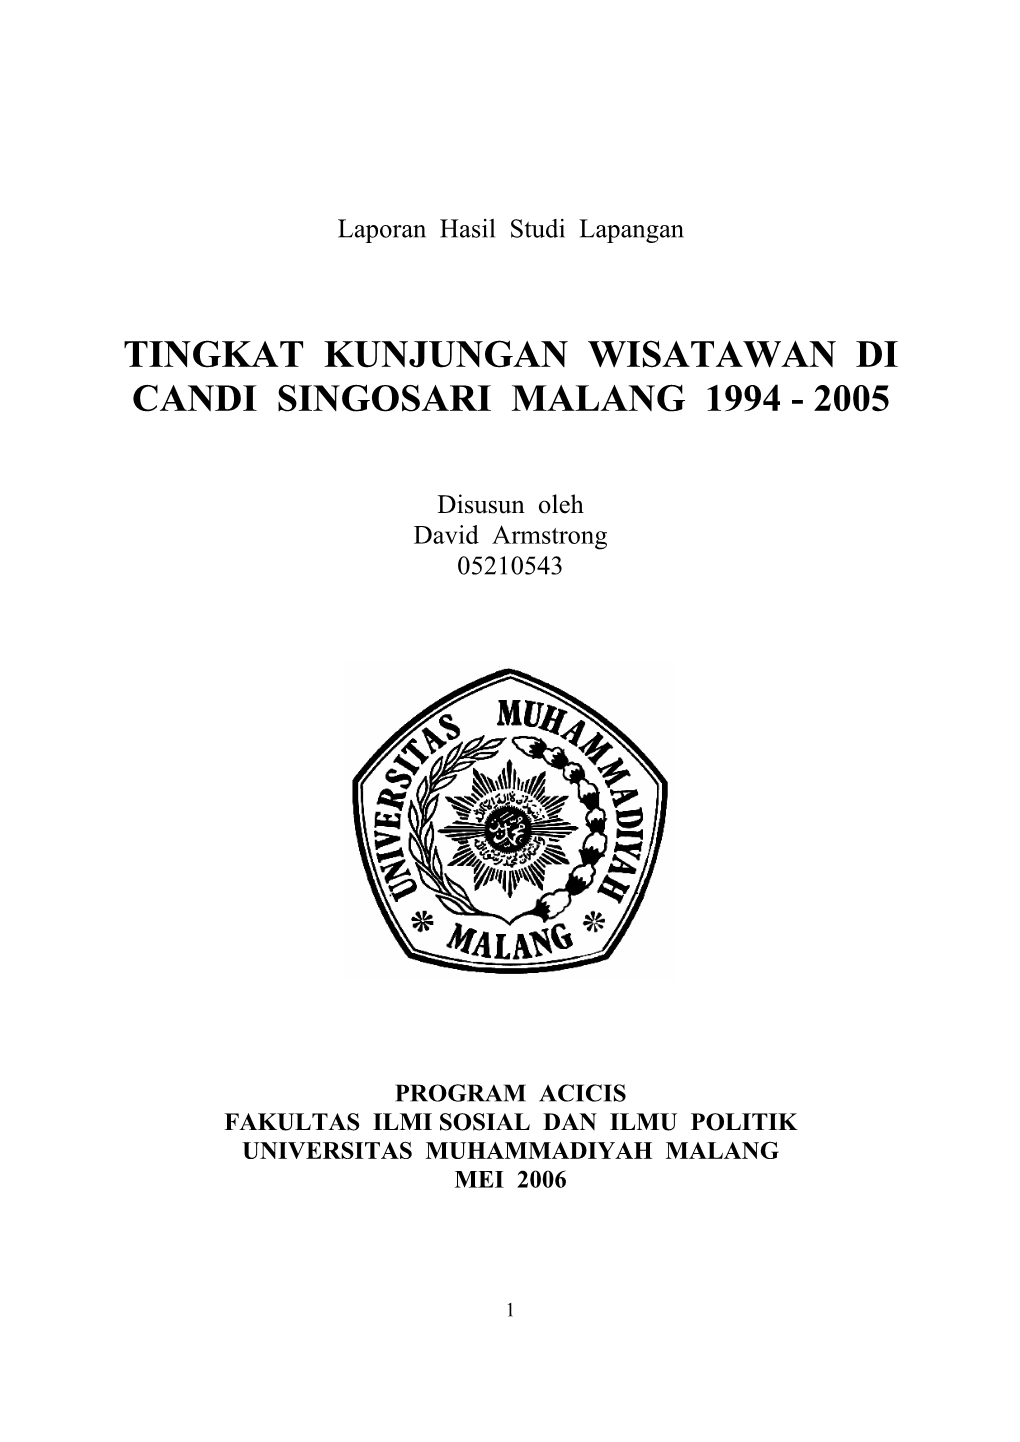 Tingkat Kunjungan Wisatawan Di Candi Singosari Malang 1994 - 2005